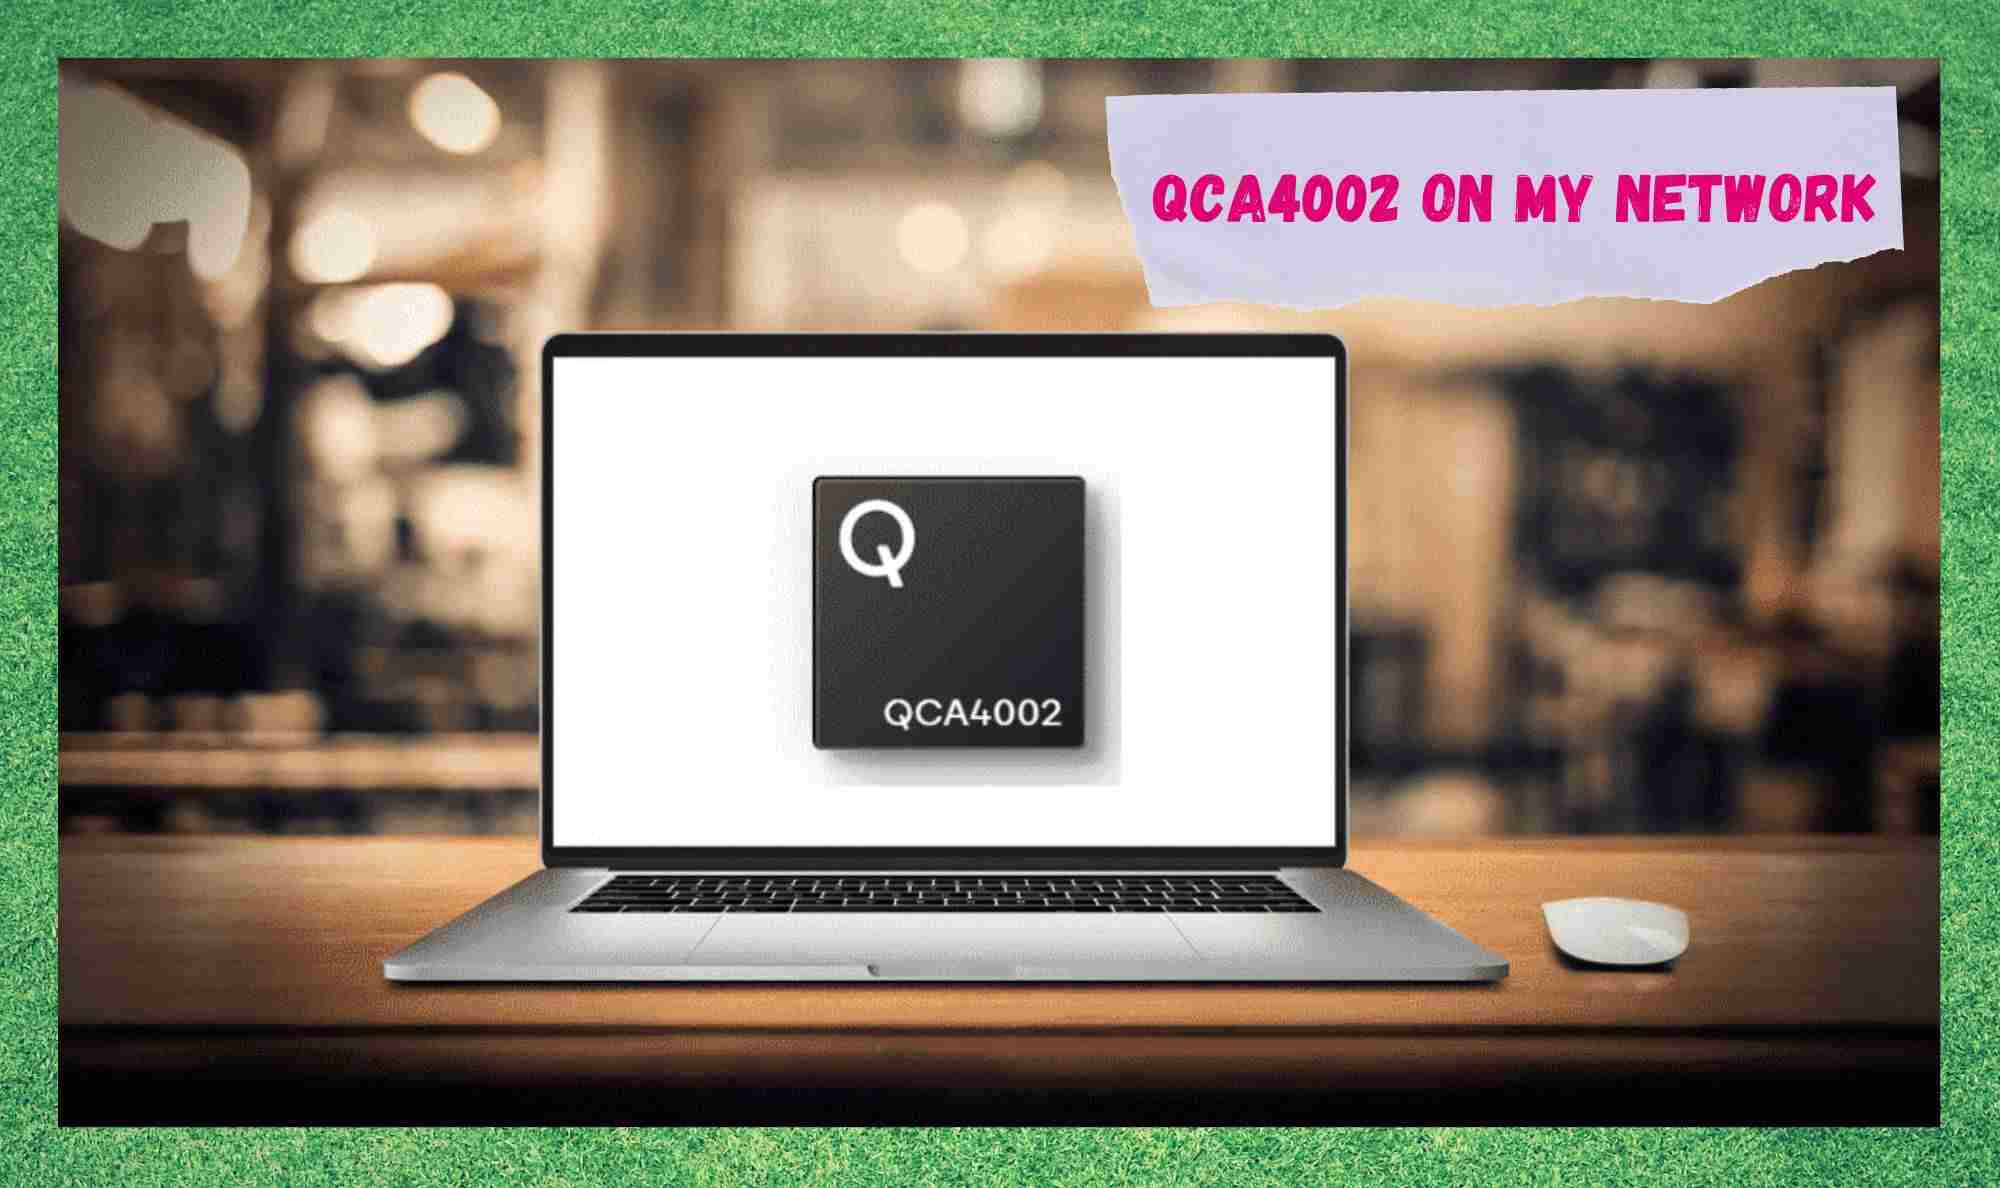 Γιατί βλέπω το QCA4002 στο δίκτυό μου;